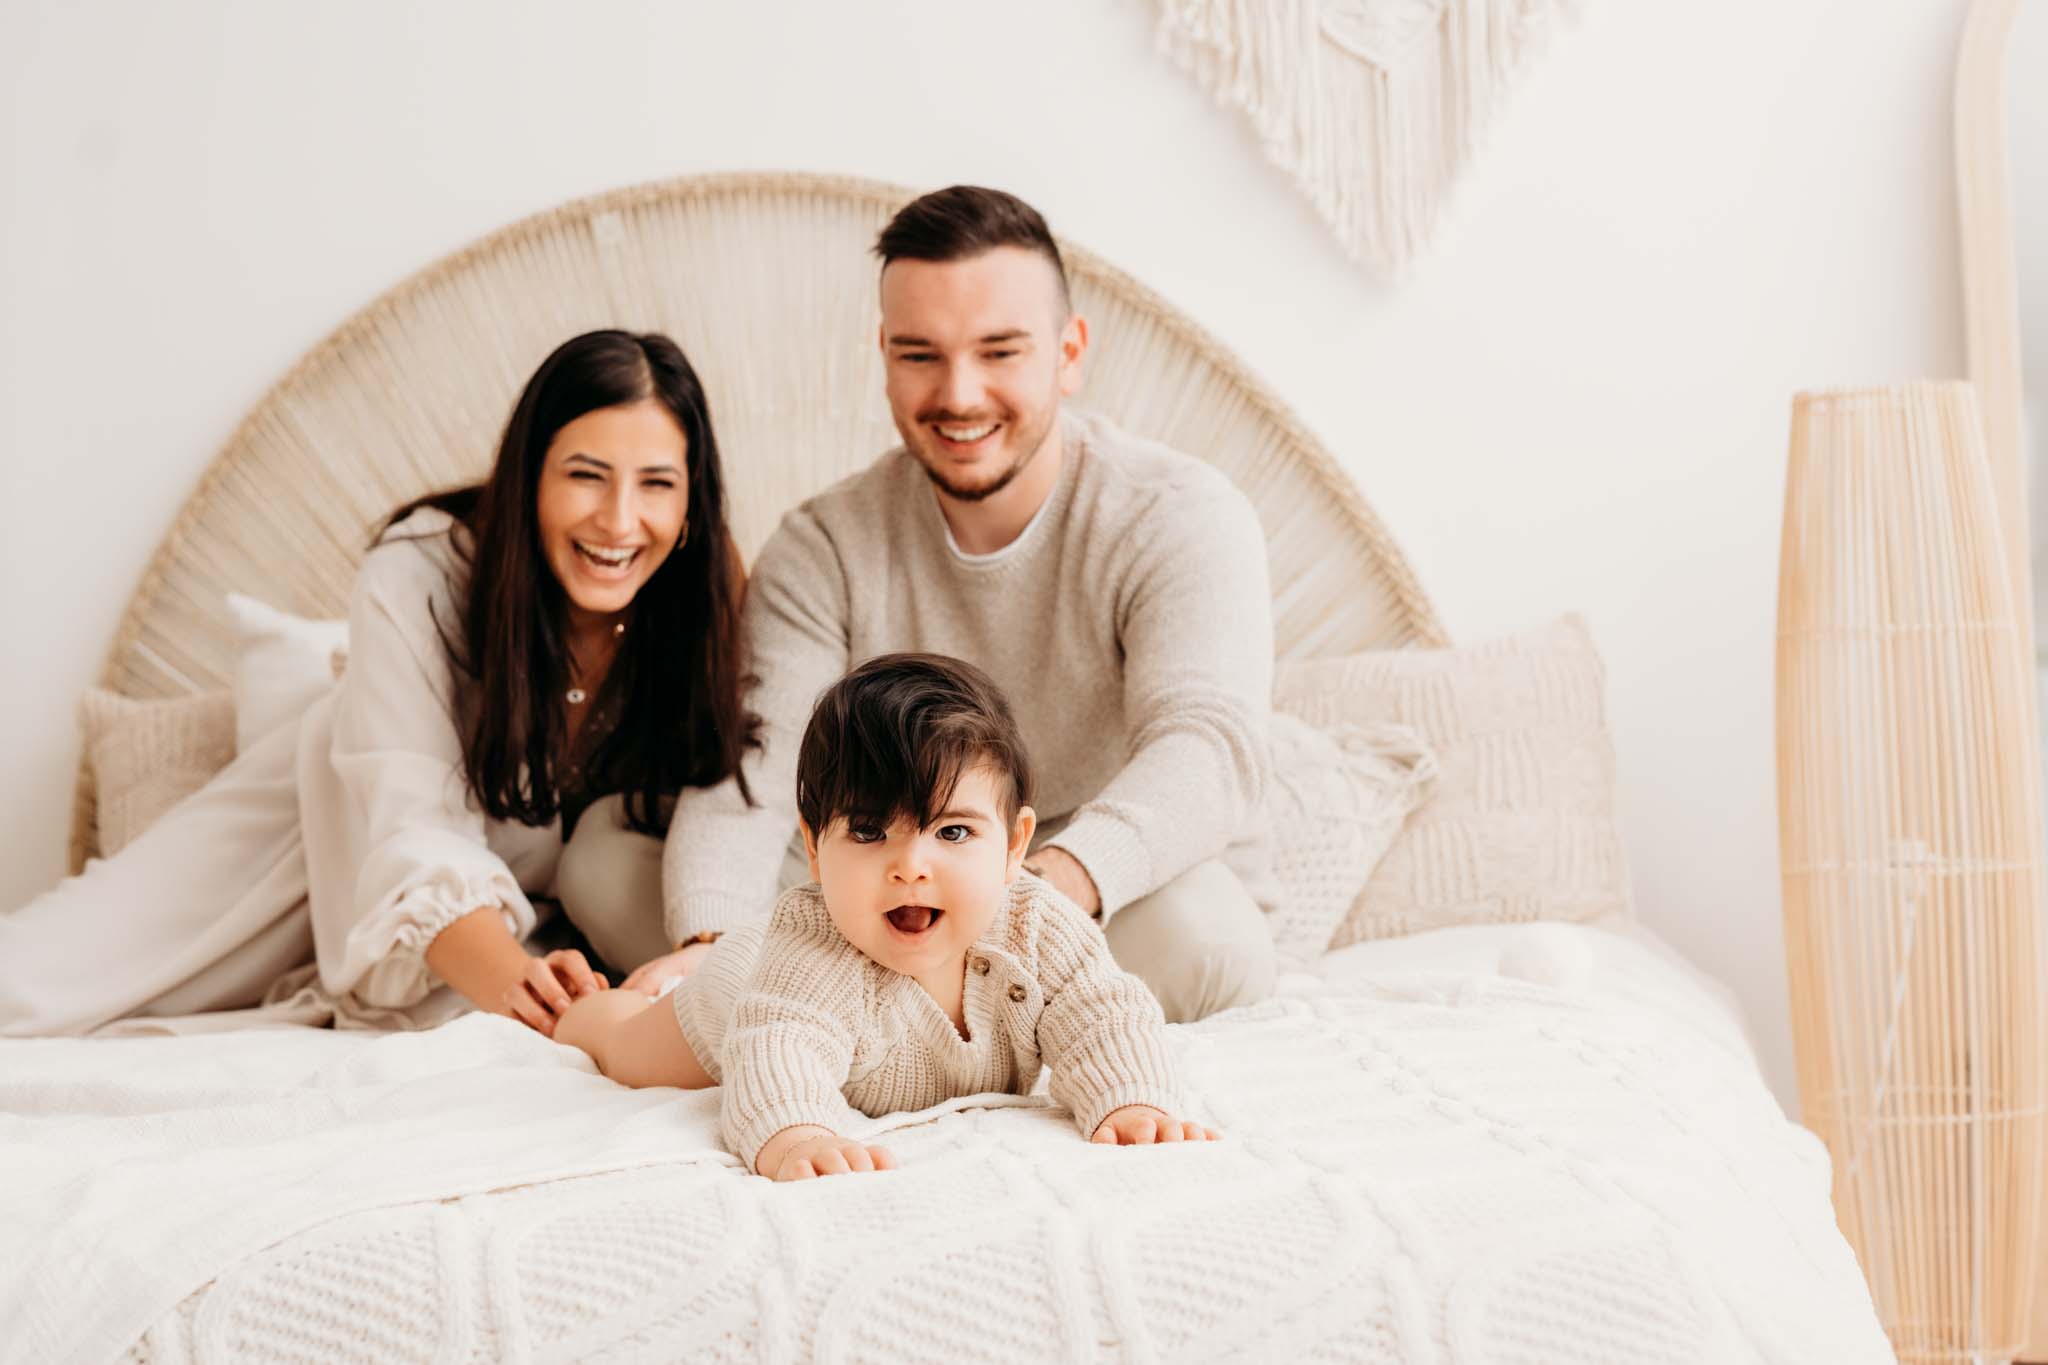 Baby krabbelt lachend Eltern am Bett davon beim Fotoshooting